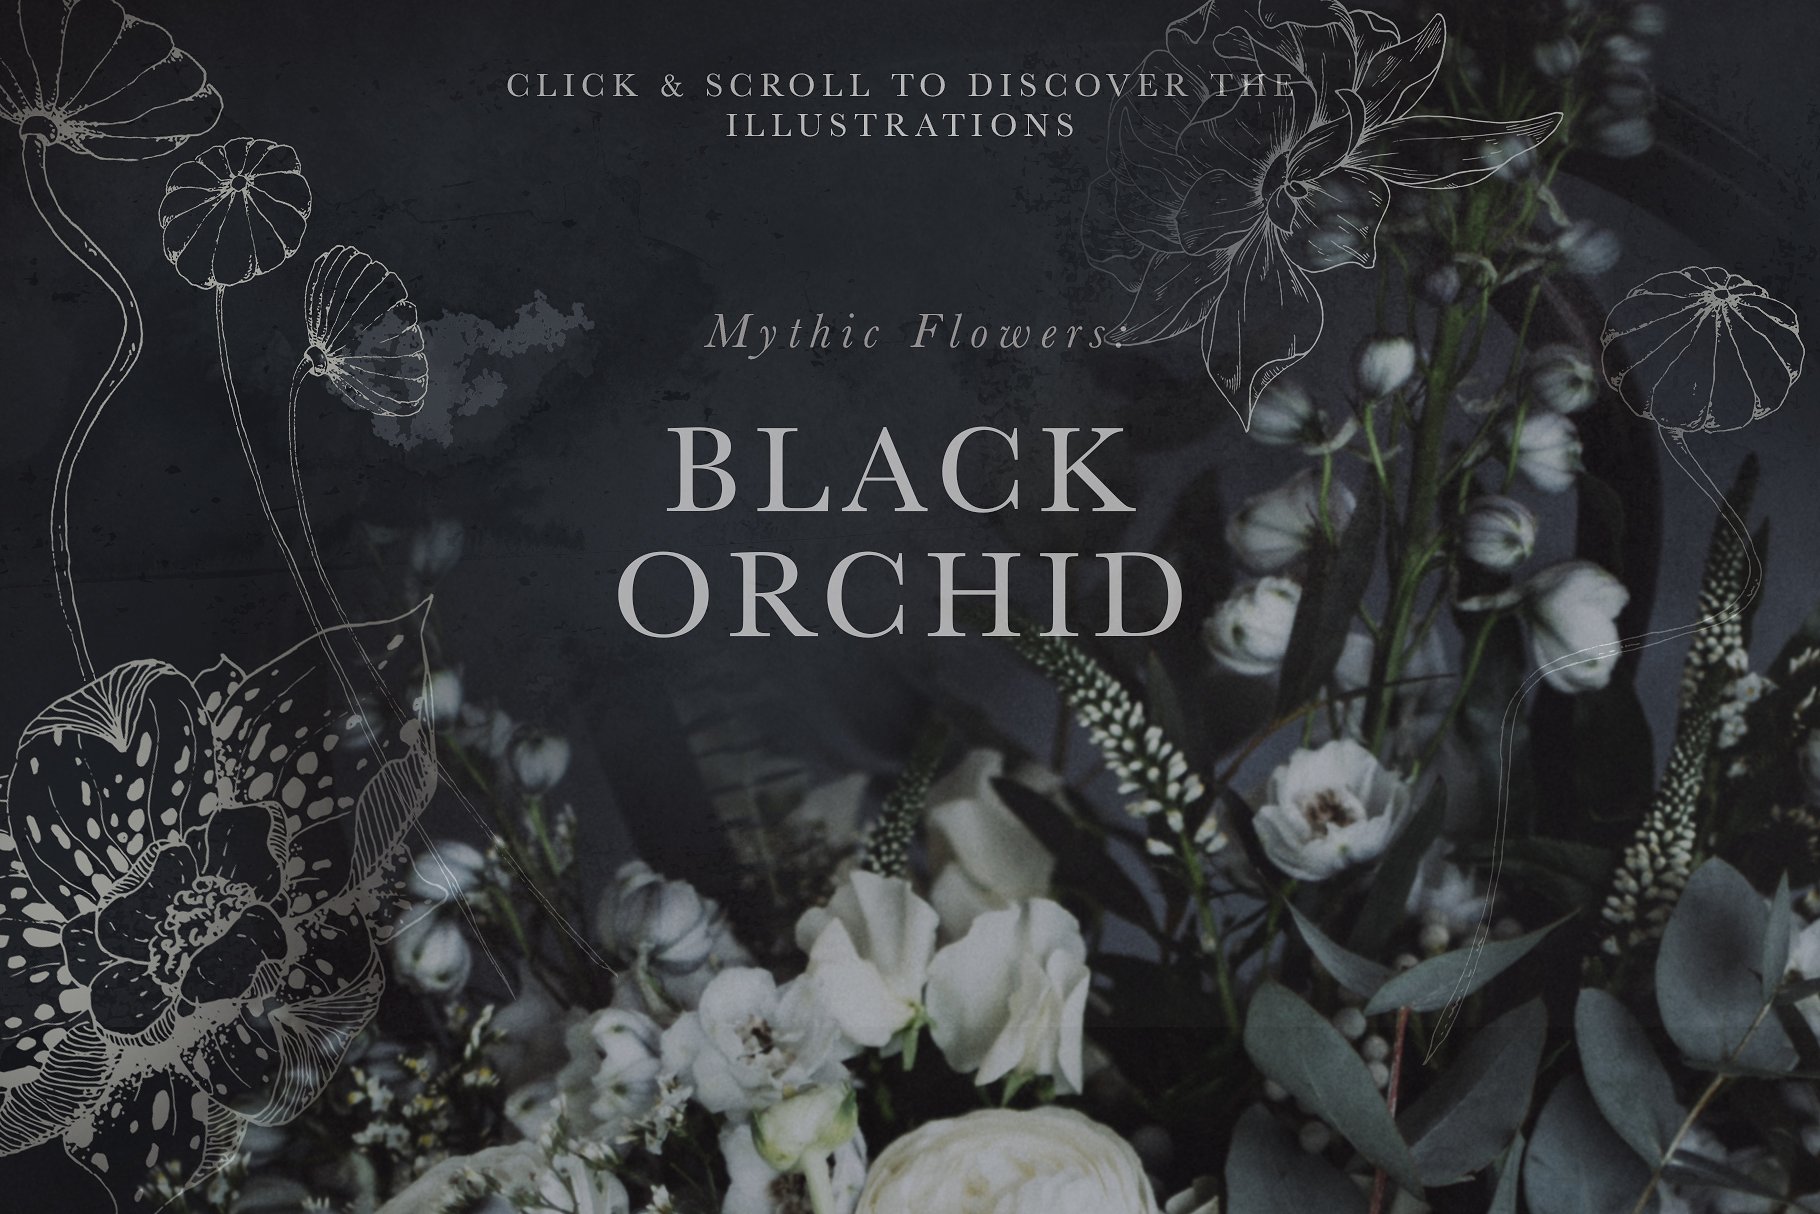 虚实结合黑色背景手绘矢量花卉图形素材 Black Orchid Illustration Set插图(1)